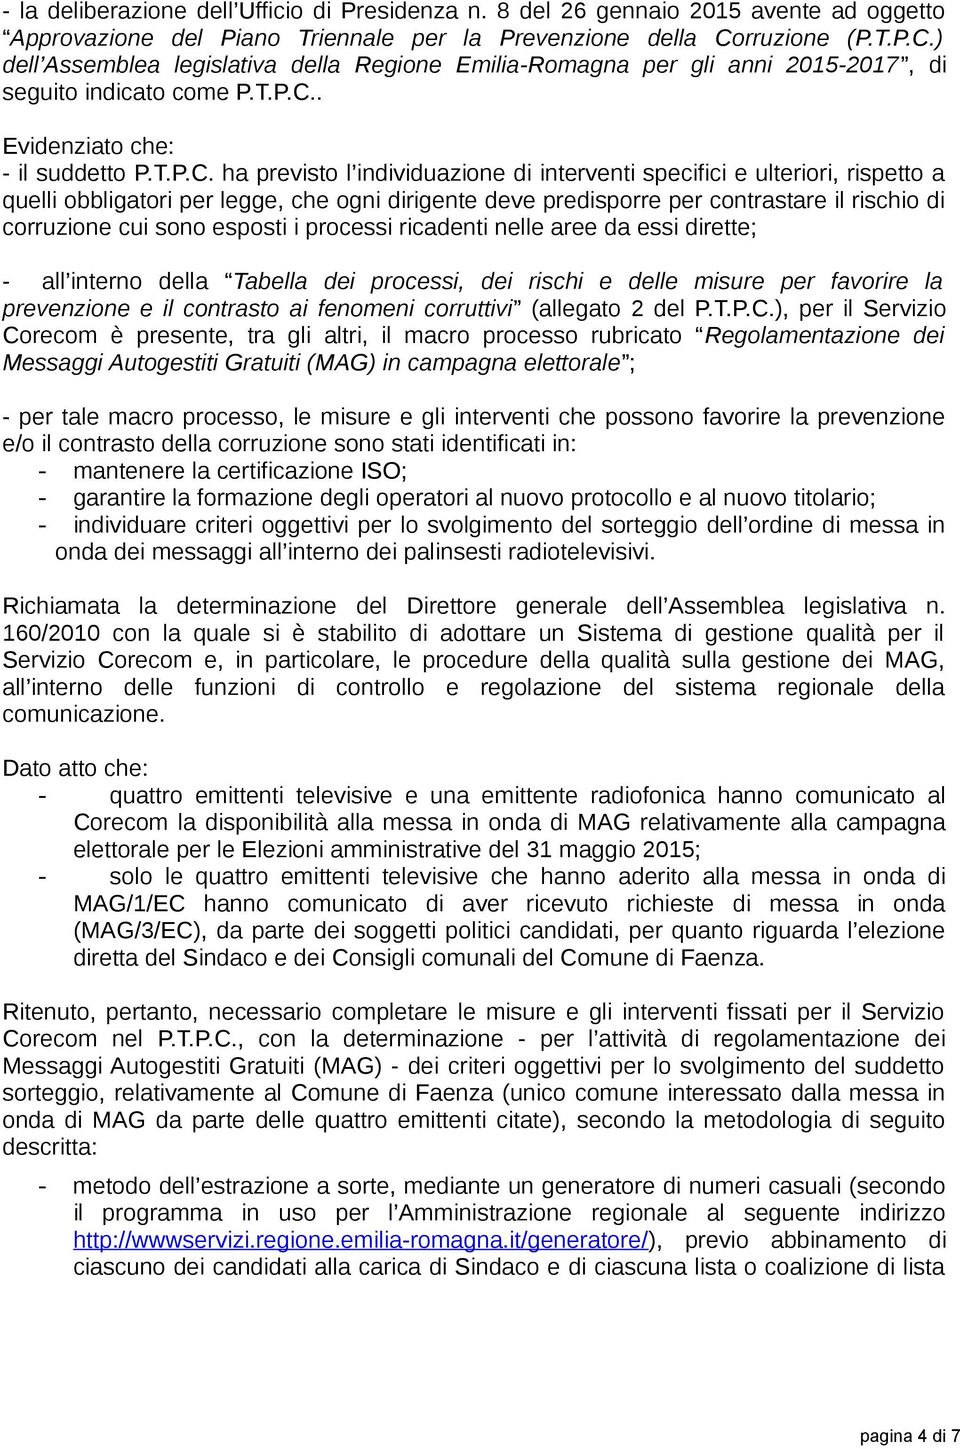 ) dell Assemblea legislativa della Regione Emilia-Romagna per gli anni 2015-2017, di seguito indicato come P.T.P.C.